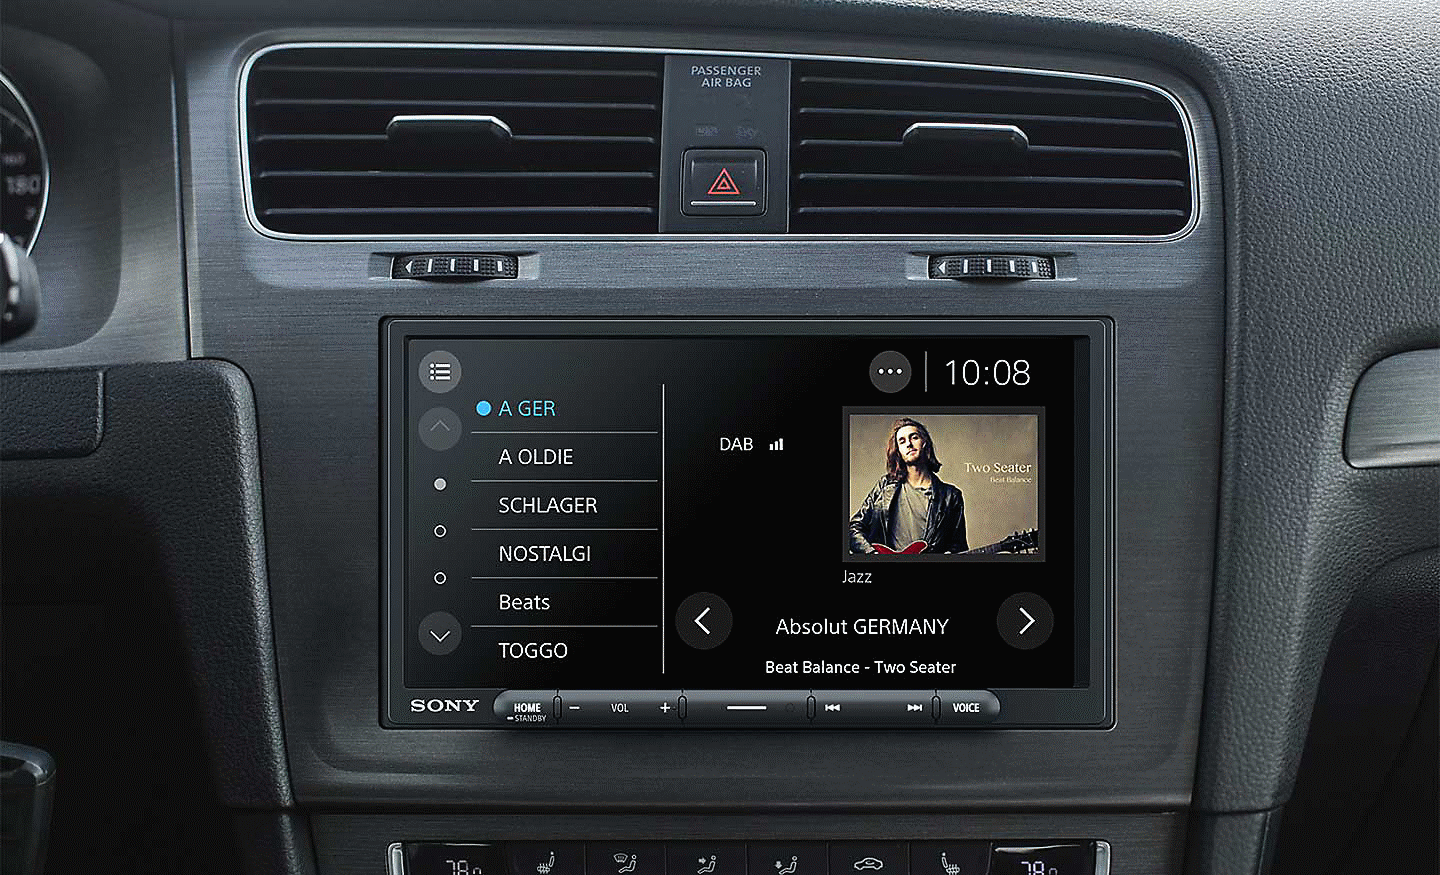 Bilde av XAV-AX4050 på et dashbord med DAB-radiogrensesnitt på skjermen